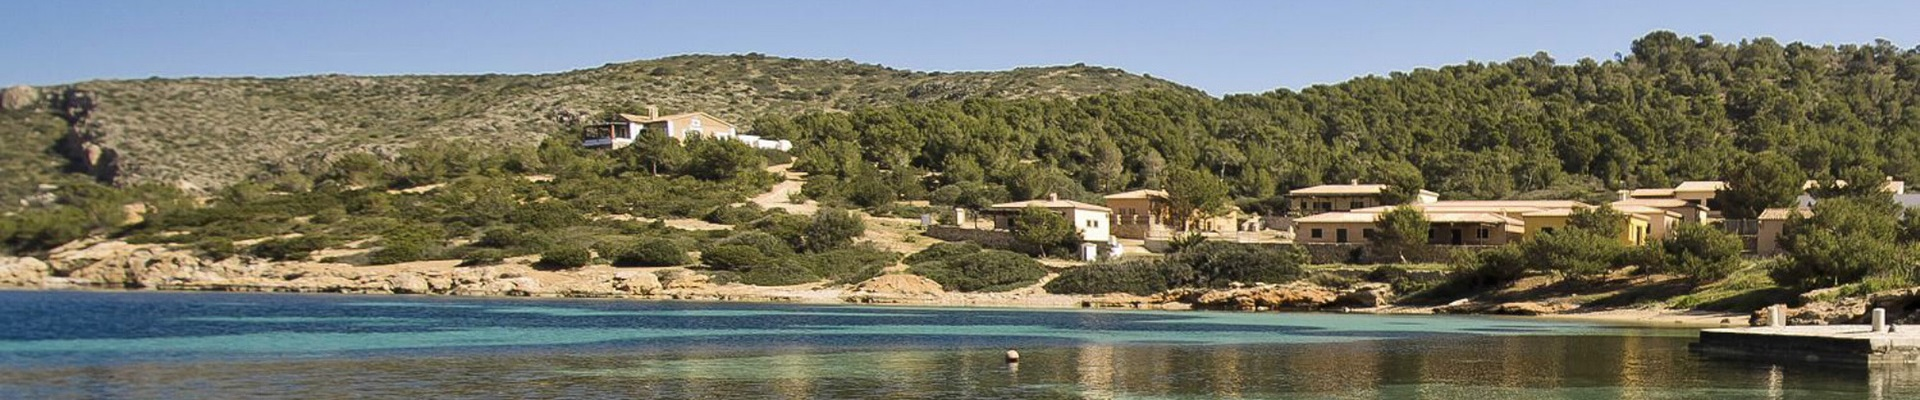 Hotel + Excursión para la Isla de Cabrera Mallorca